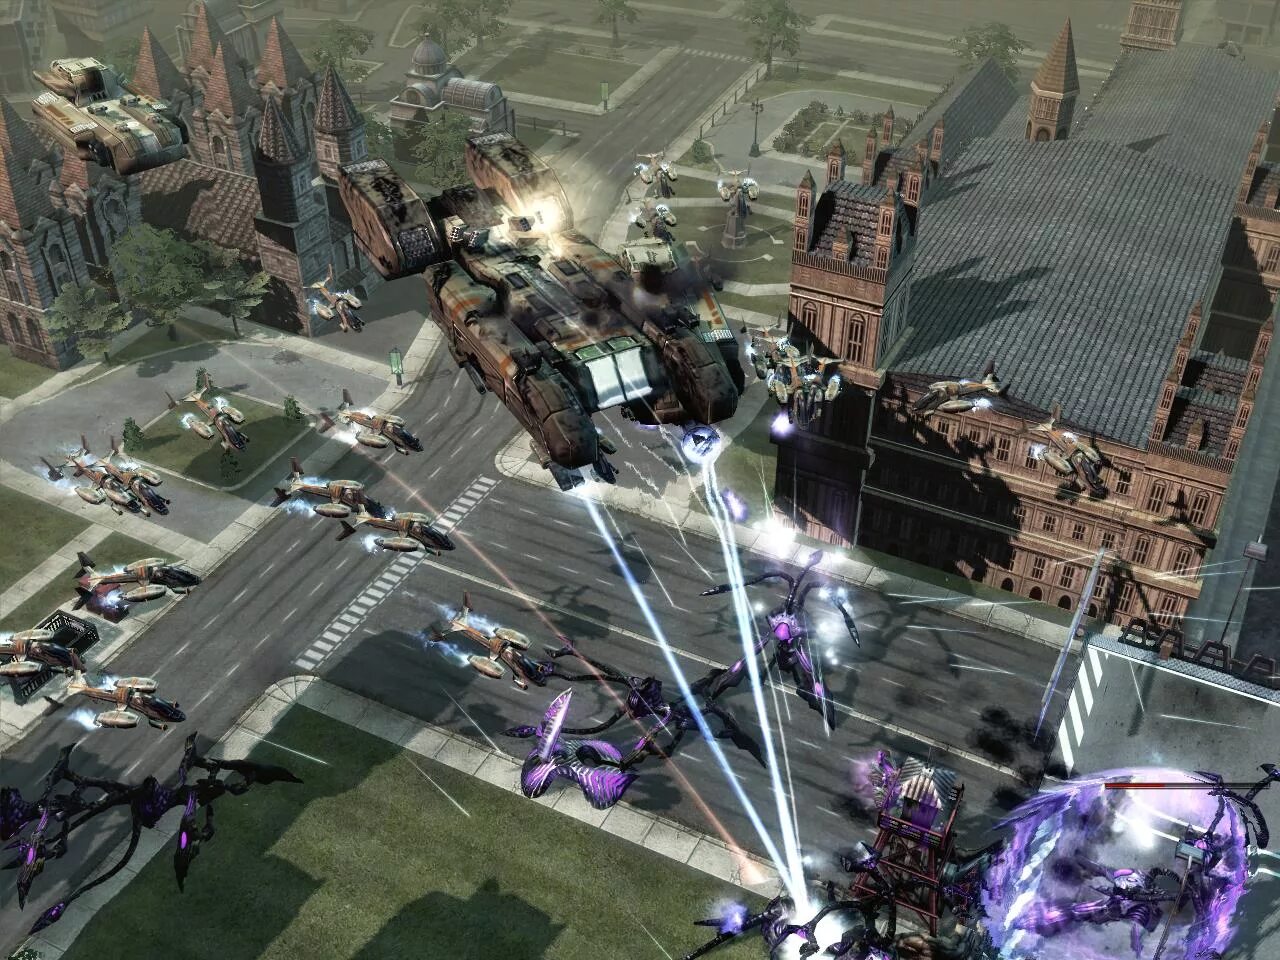 C&C 3 Crossfire. C&c3: Tiberium Wars Mod 2029. Command and Conquer 3 Tiberium Wars Mods. Тибериум ВАРС 3 моды.